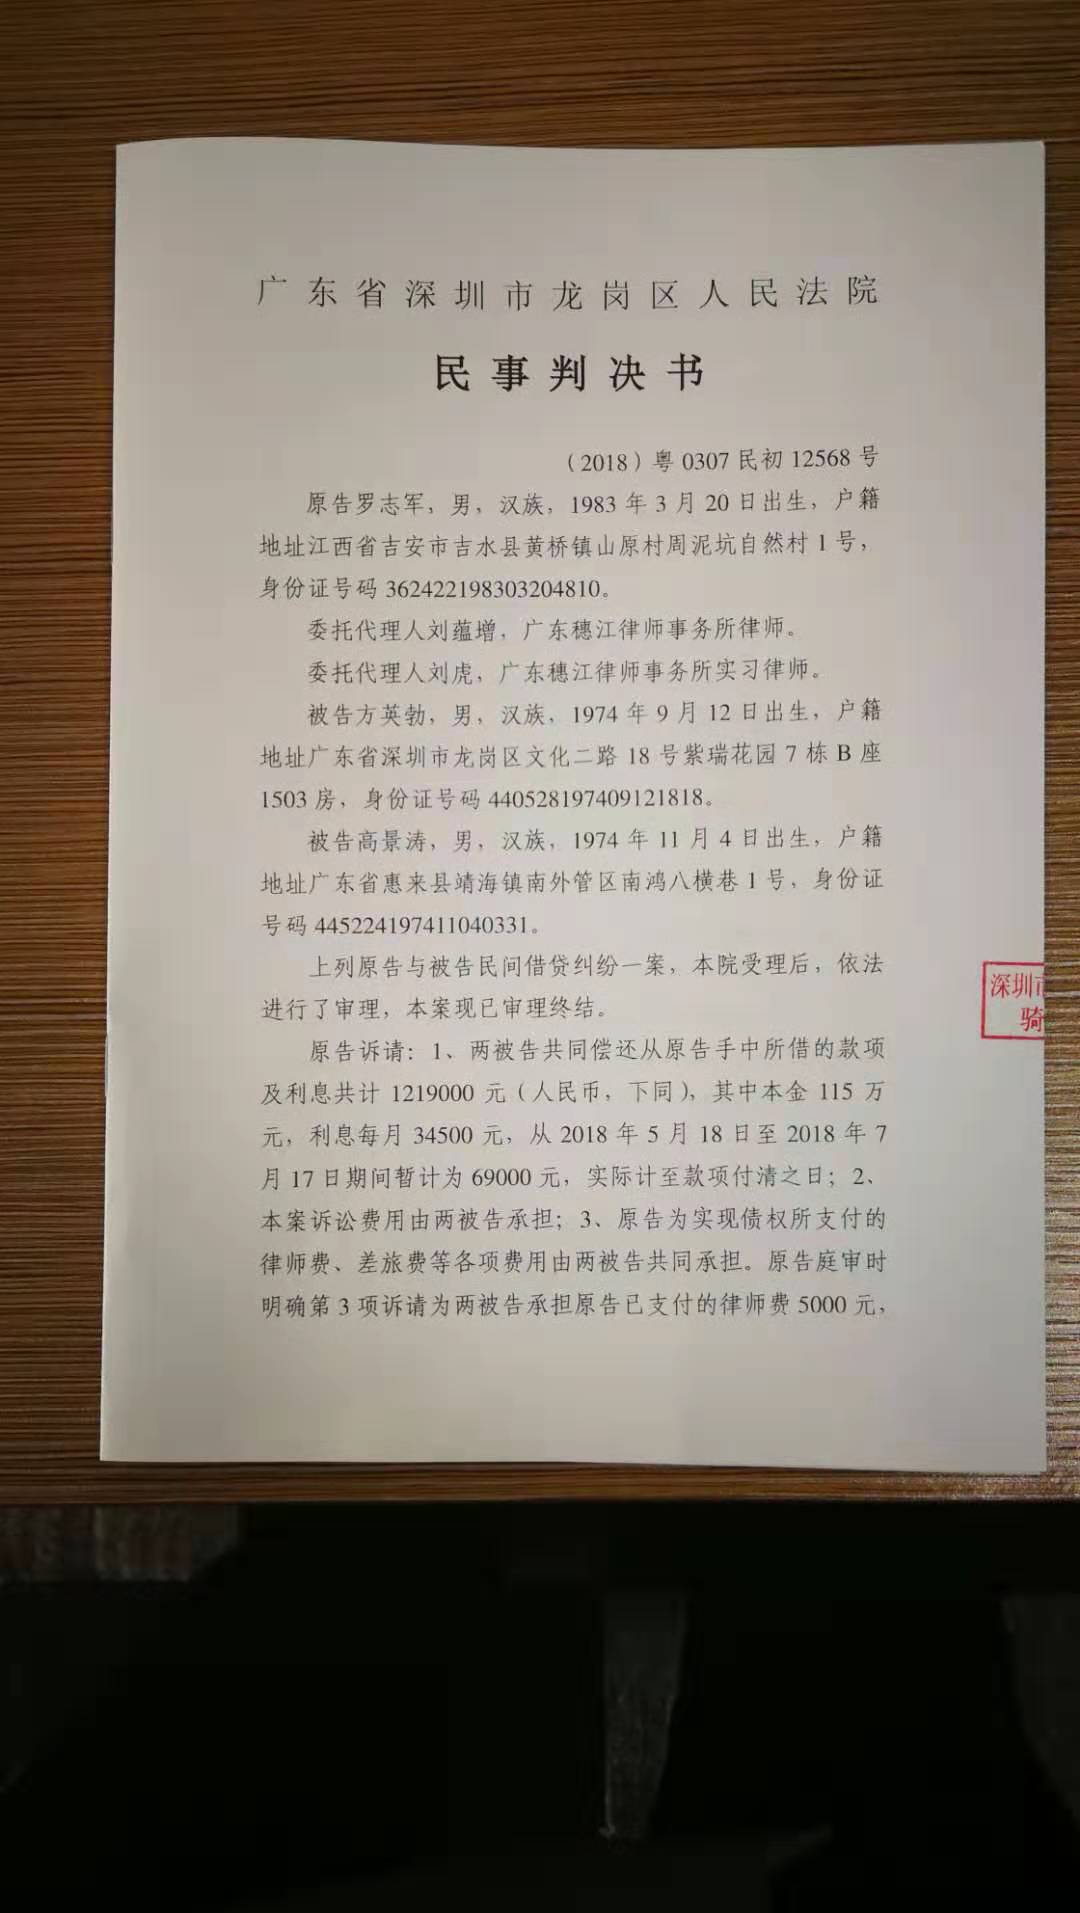 广州龙基实业有限公司关于涉及重大仲裁的公告